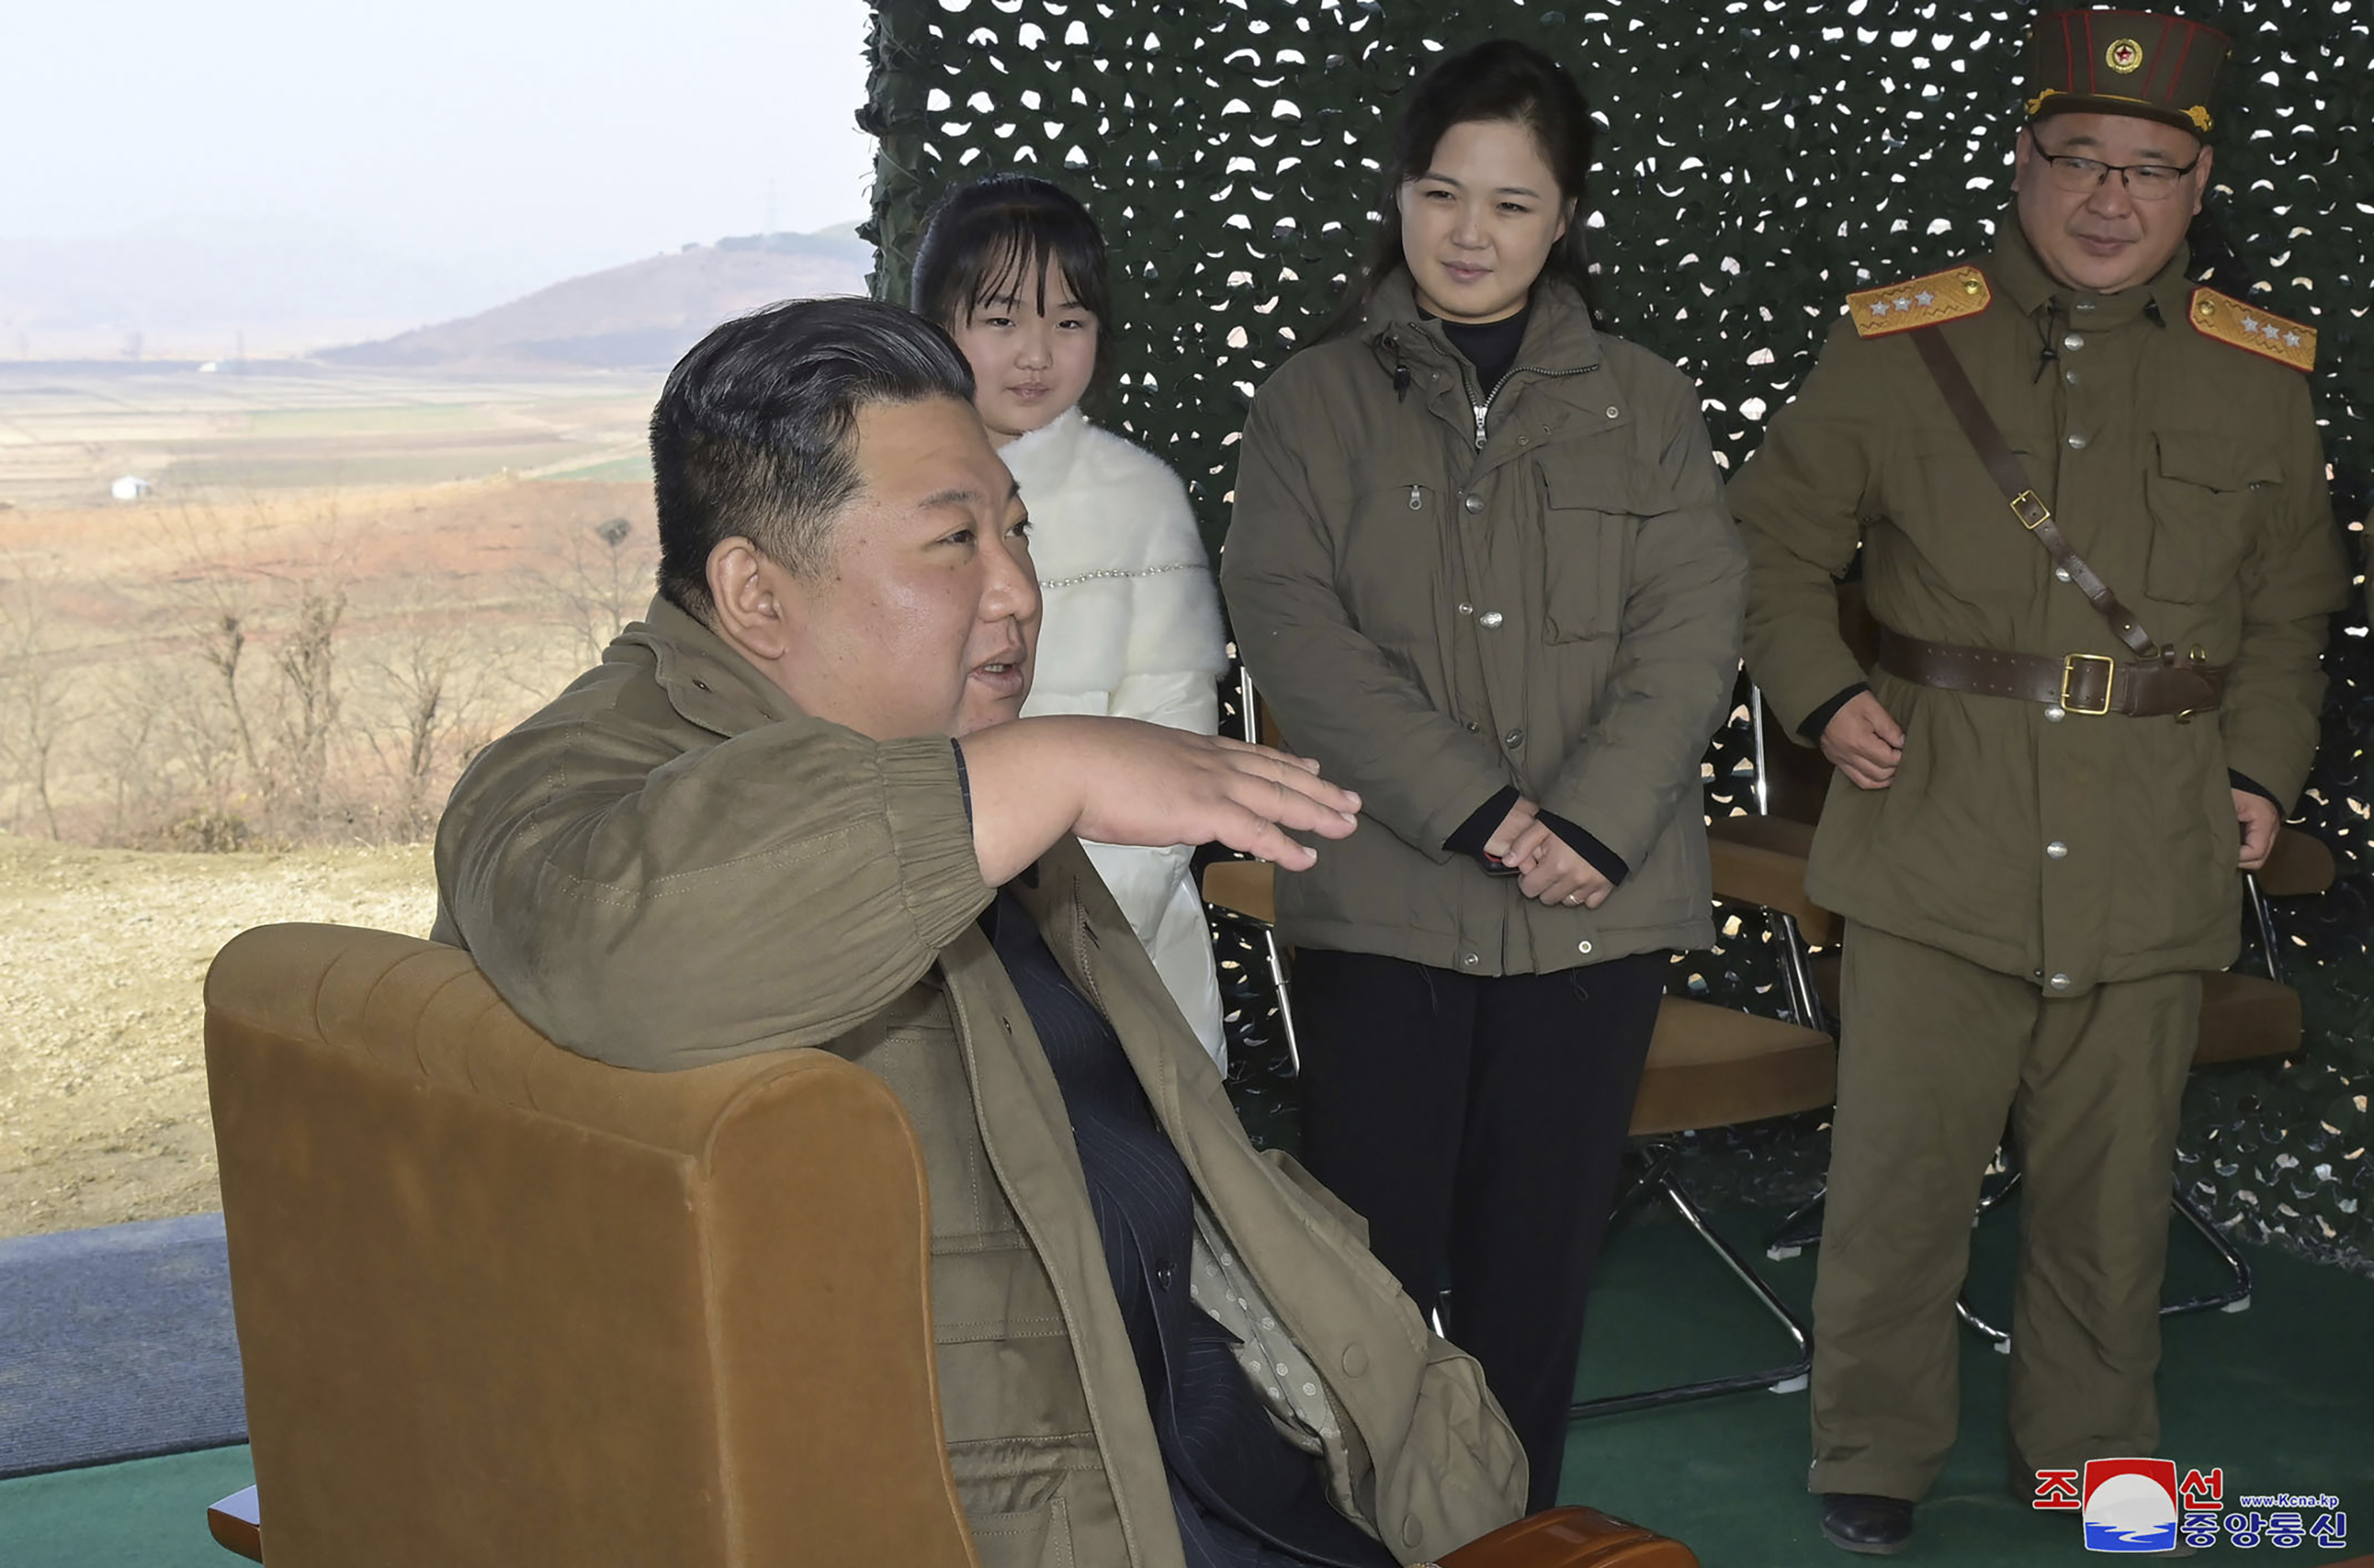 <p>Севернокорейските медии съобщиха, че Ким Чен-ун е наблюдавал изстрелването на ракетата в присъствието на съпругата си И Сол-джу и &quot;любимата им дъщеря&quot;, както и на други официални лица</p>